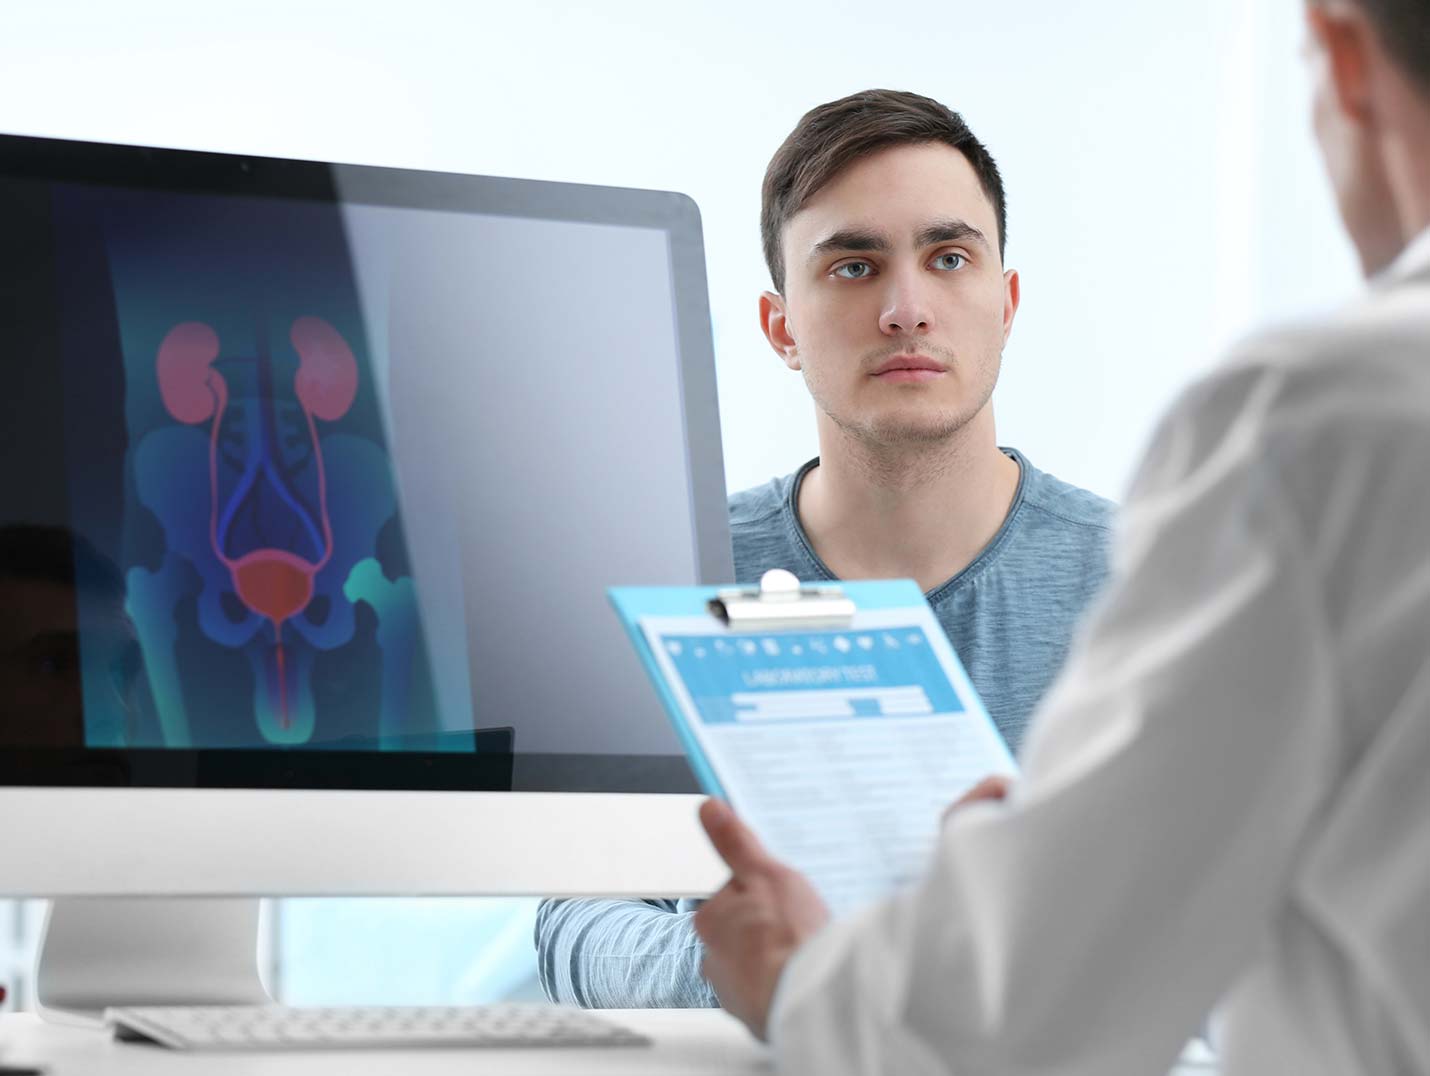 Doctor sosteniendo una tabla con clip azul, mientras un paciente lo mira detenidamente. Hay un monitor mostrando el sistema urinario